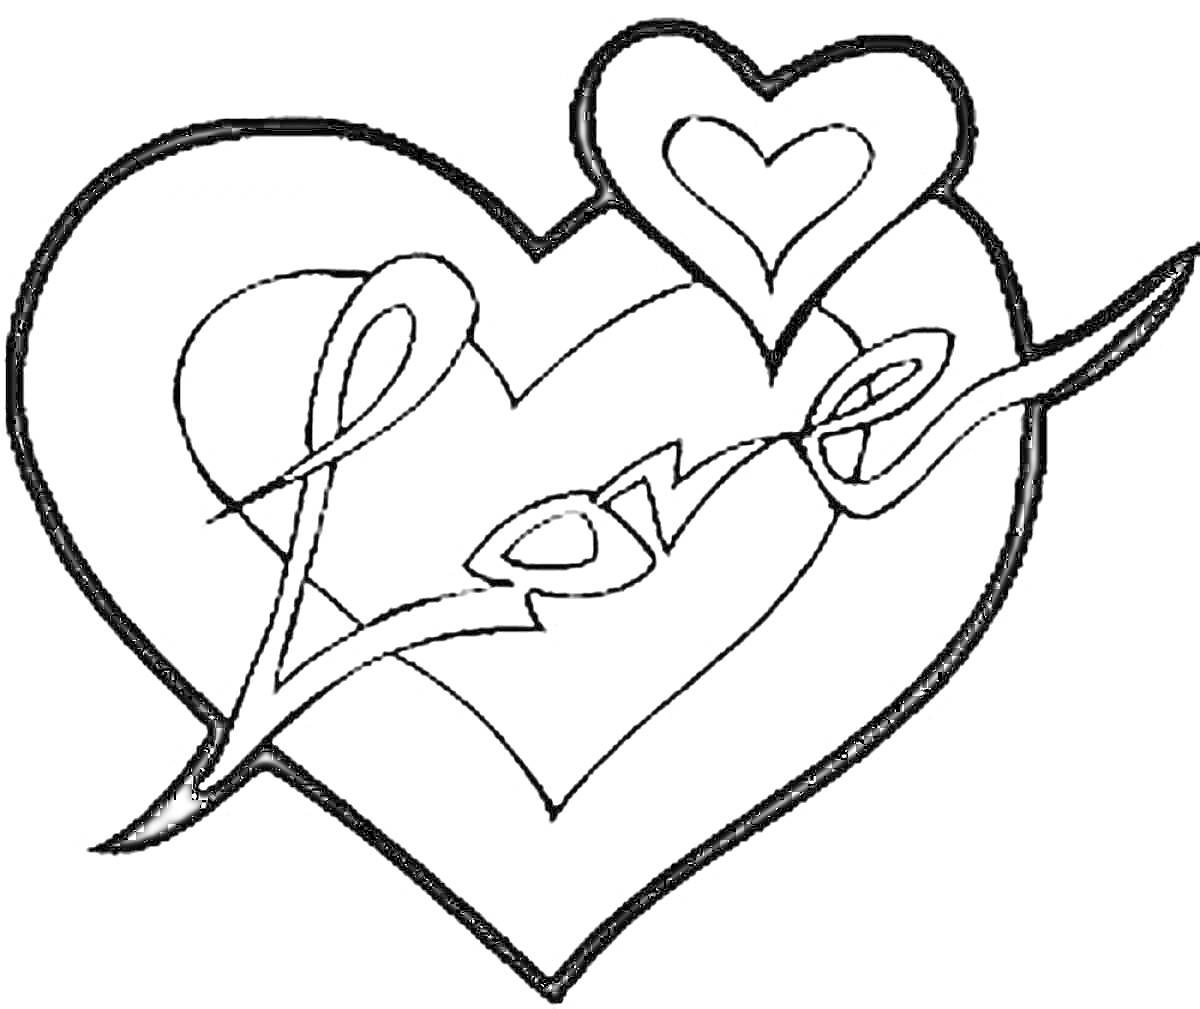 Раскраска Три сердечка с надписью Love внутри основного сердечка